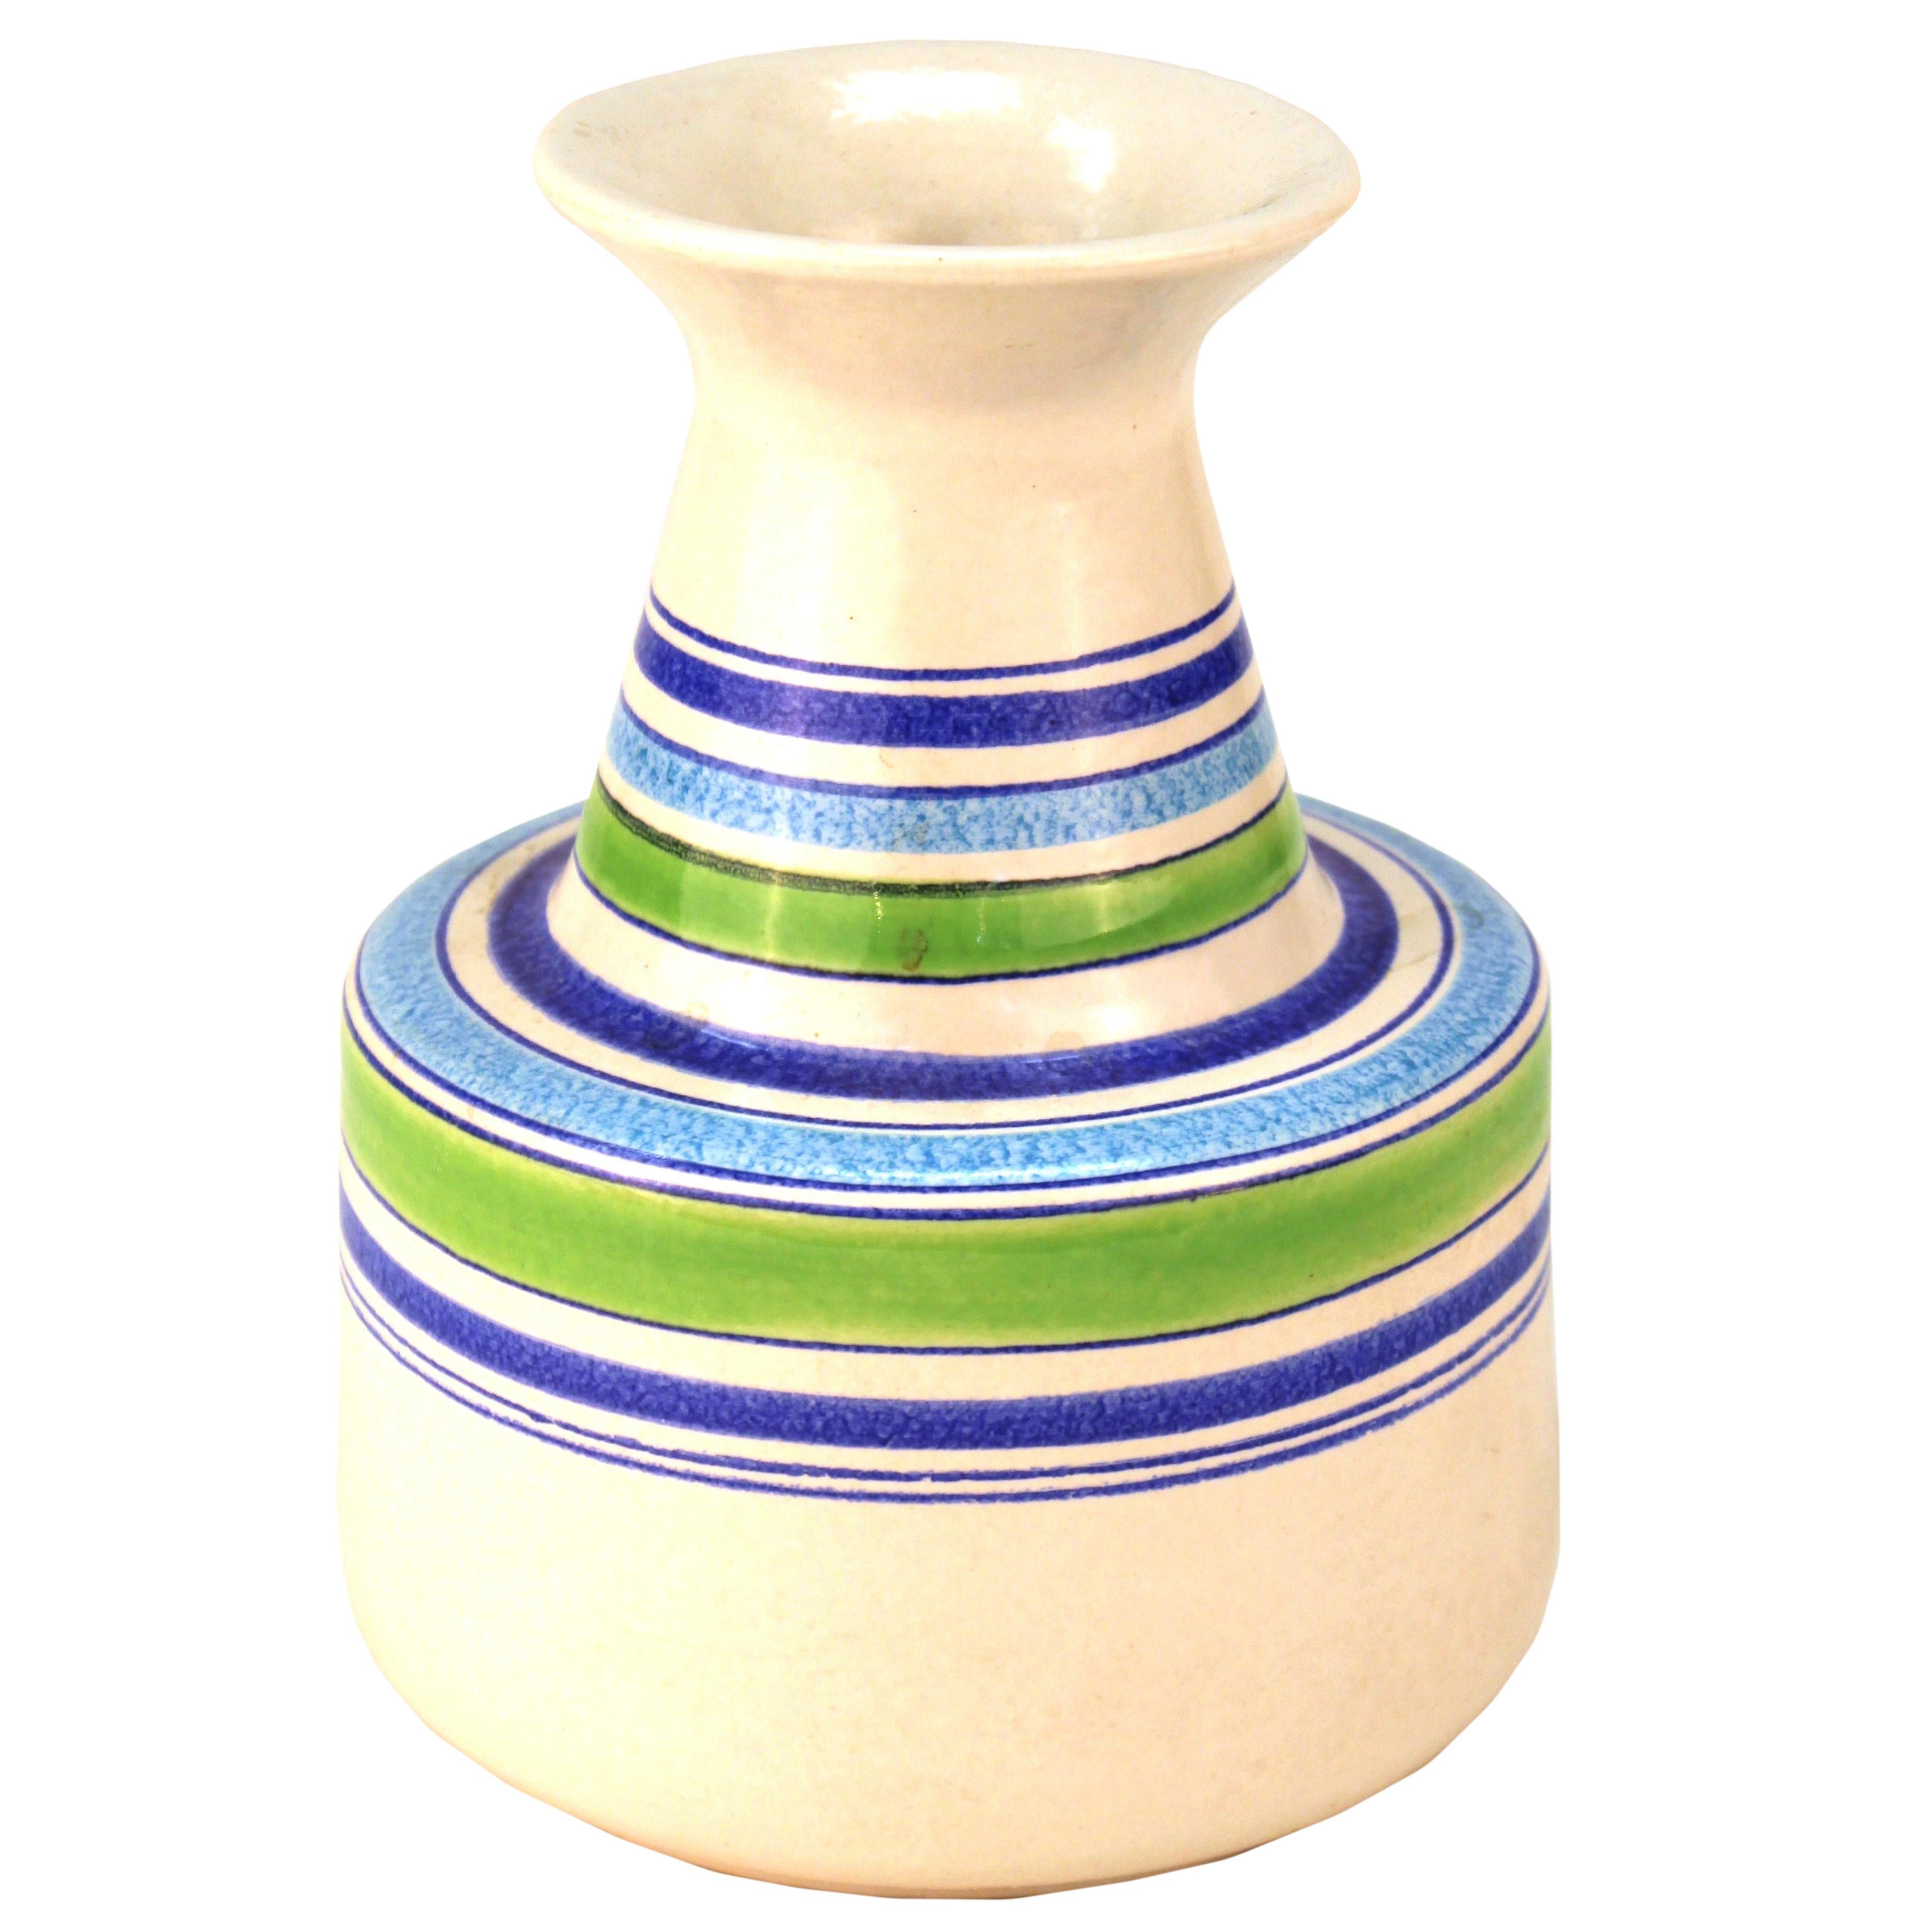 Aldo Londi Mid-Century Modern Raymor for Bitossi Rosenthal Netter Ceramic Vase